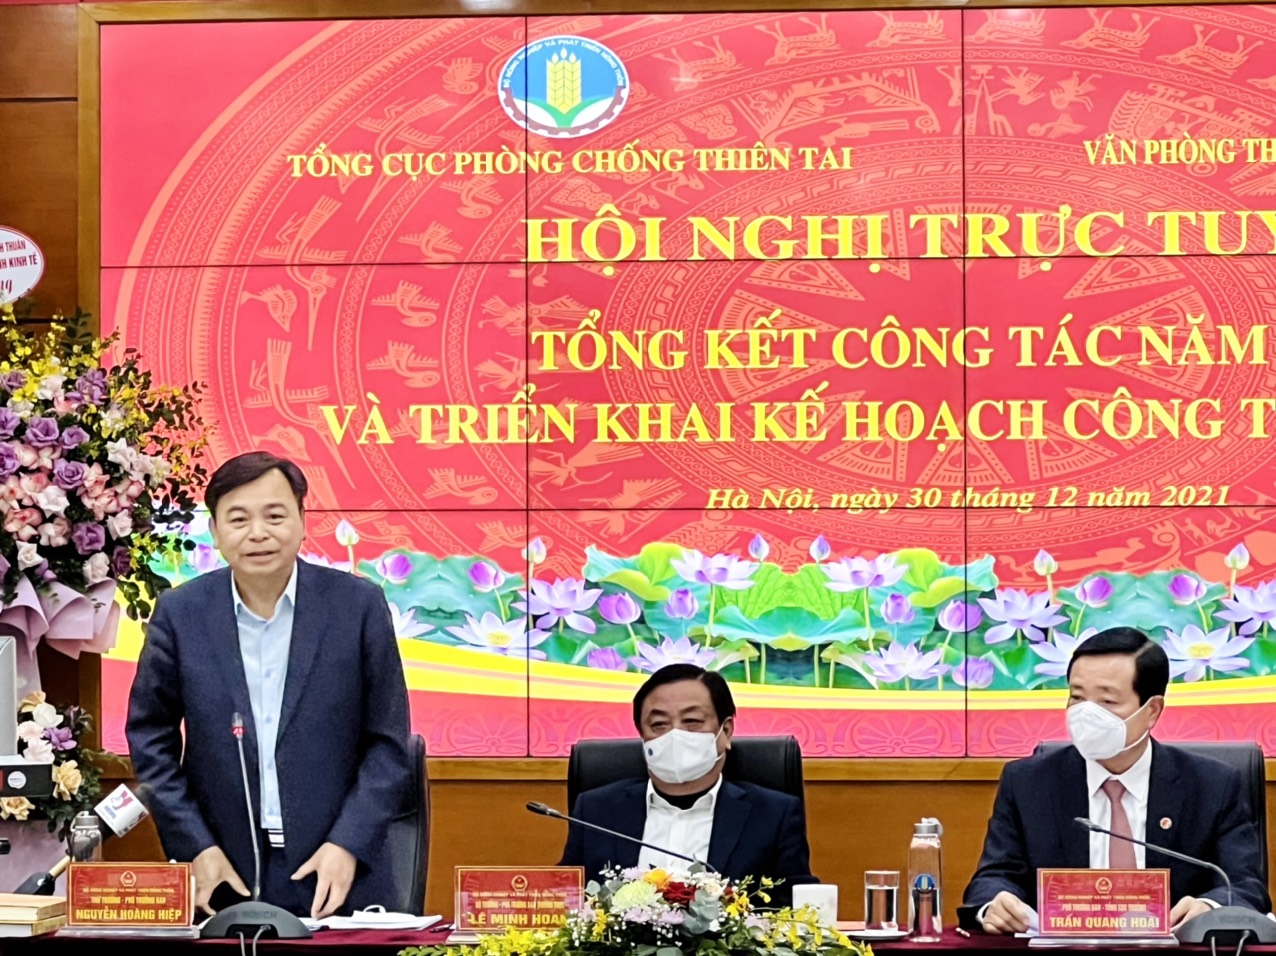 Ông Nguyễn Hoàng Hiệp, Phó trưởng ban Ban Chỉ đạo quốc gia về PCTT – Thứ trưởng Bộ NN&PTNT phát biểu tại Hội nghị.